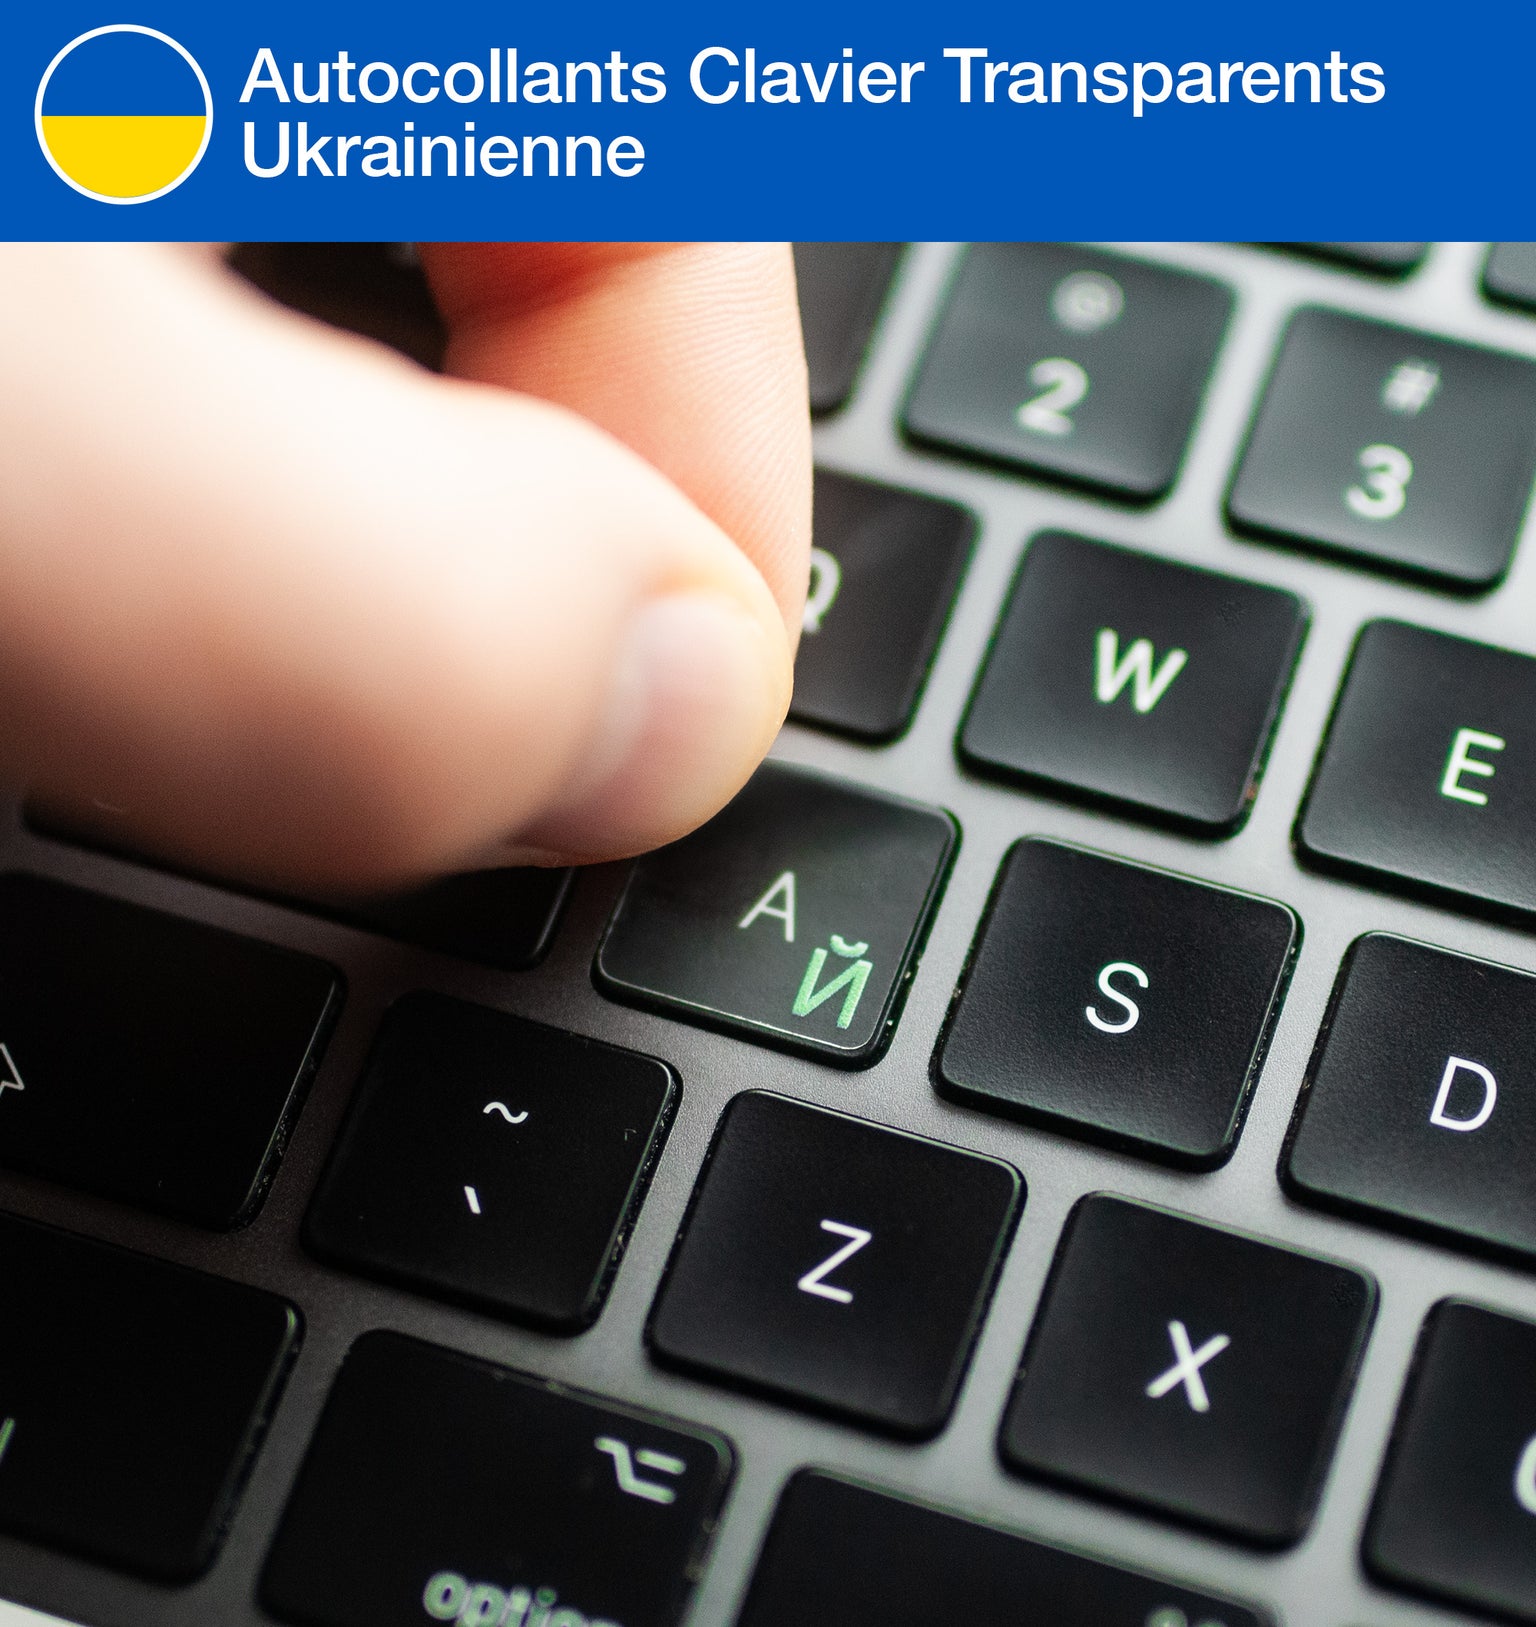 Stickers Autocollants Clavier Transparents Ukrainienne